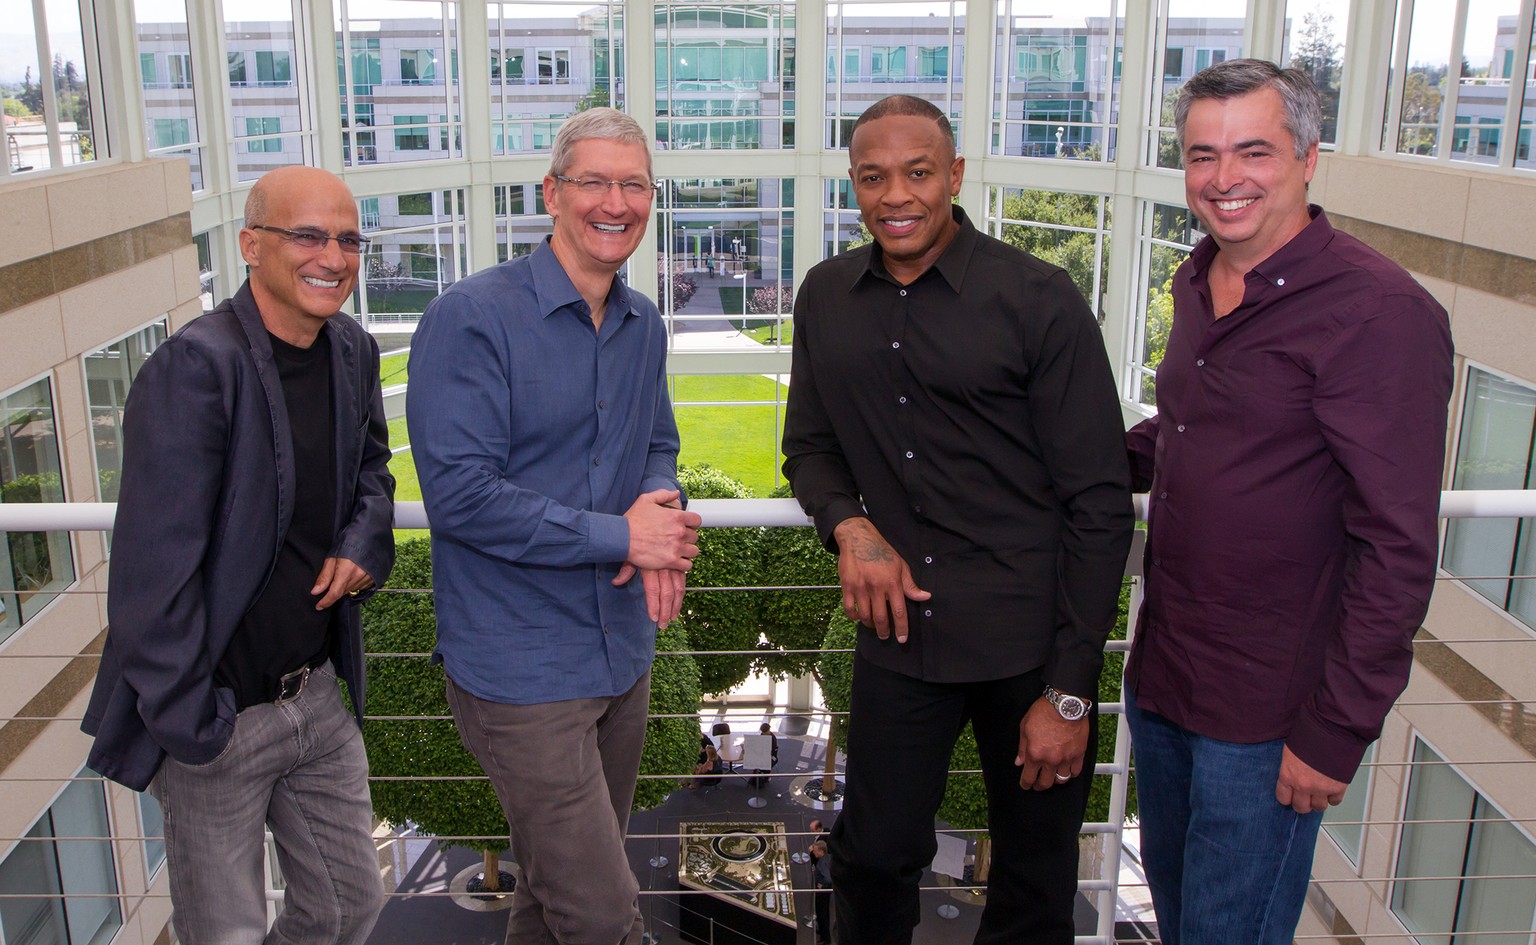 Die Herren wissen, wie man möglichst viel Geld aus einem Produkt herauspresst: Tim Cook und Dr. Dre (Bildmitte) posieren im Apple-Hauptquartier in Kalifornien.&nbsp;